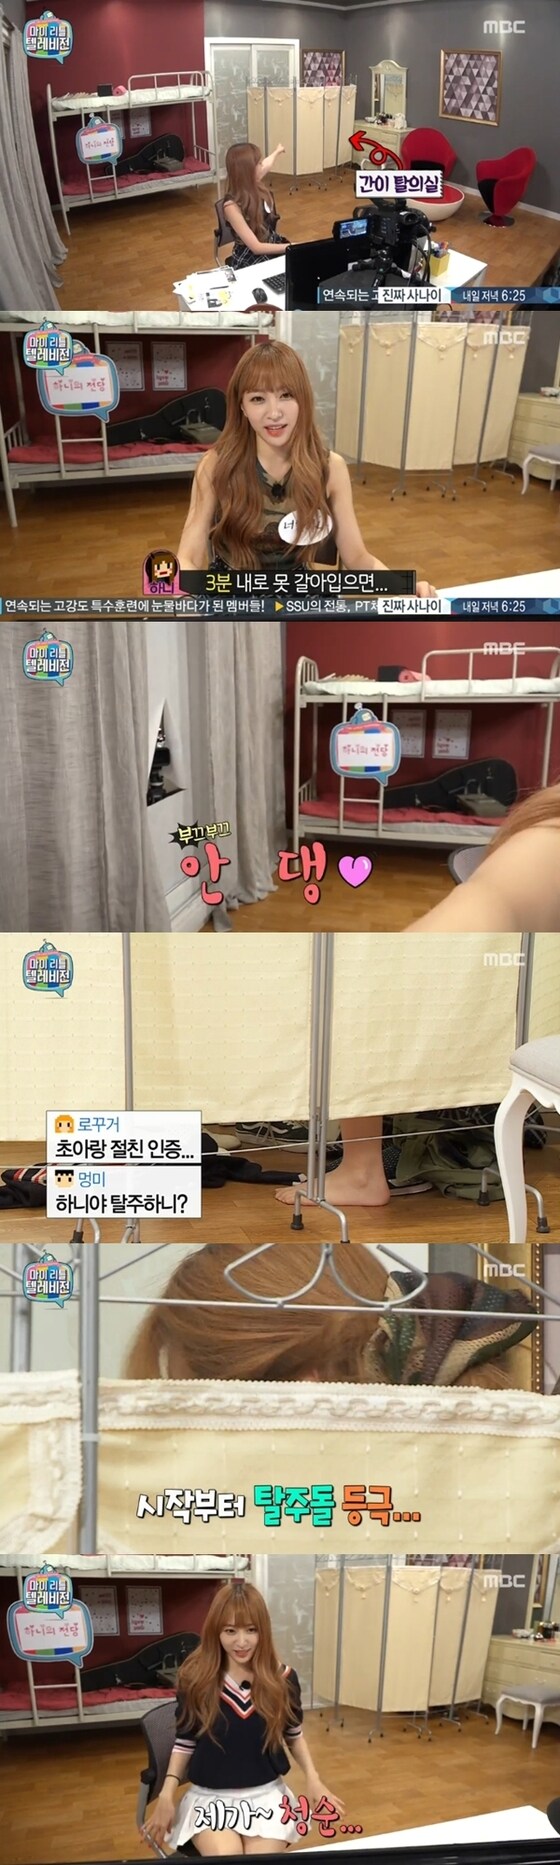 하니가 즉석 탈의실에서 옷을 갈아입었다. © News1스포츠 / MBC ´마이 리틀 텔레비전´ 캡처